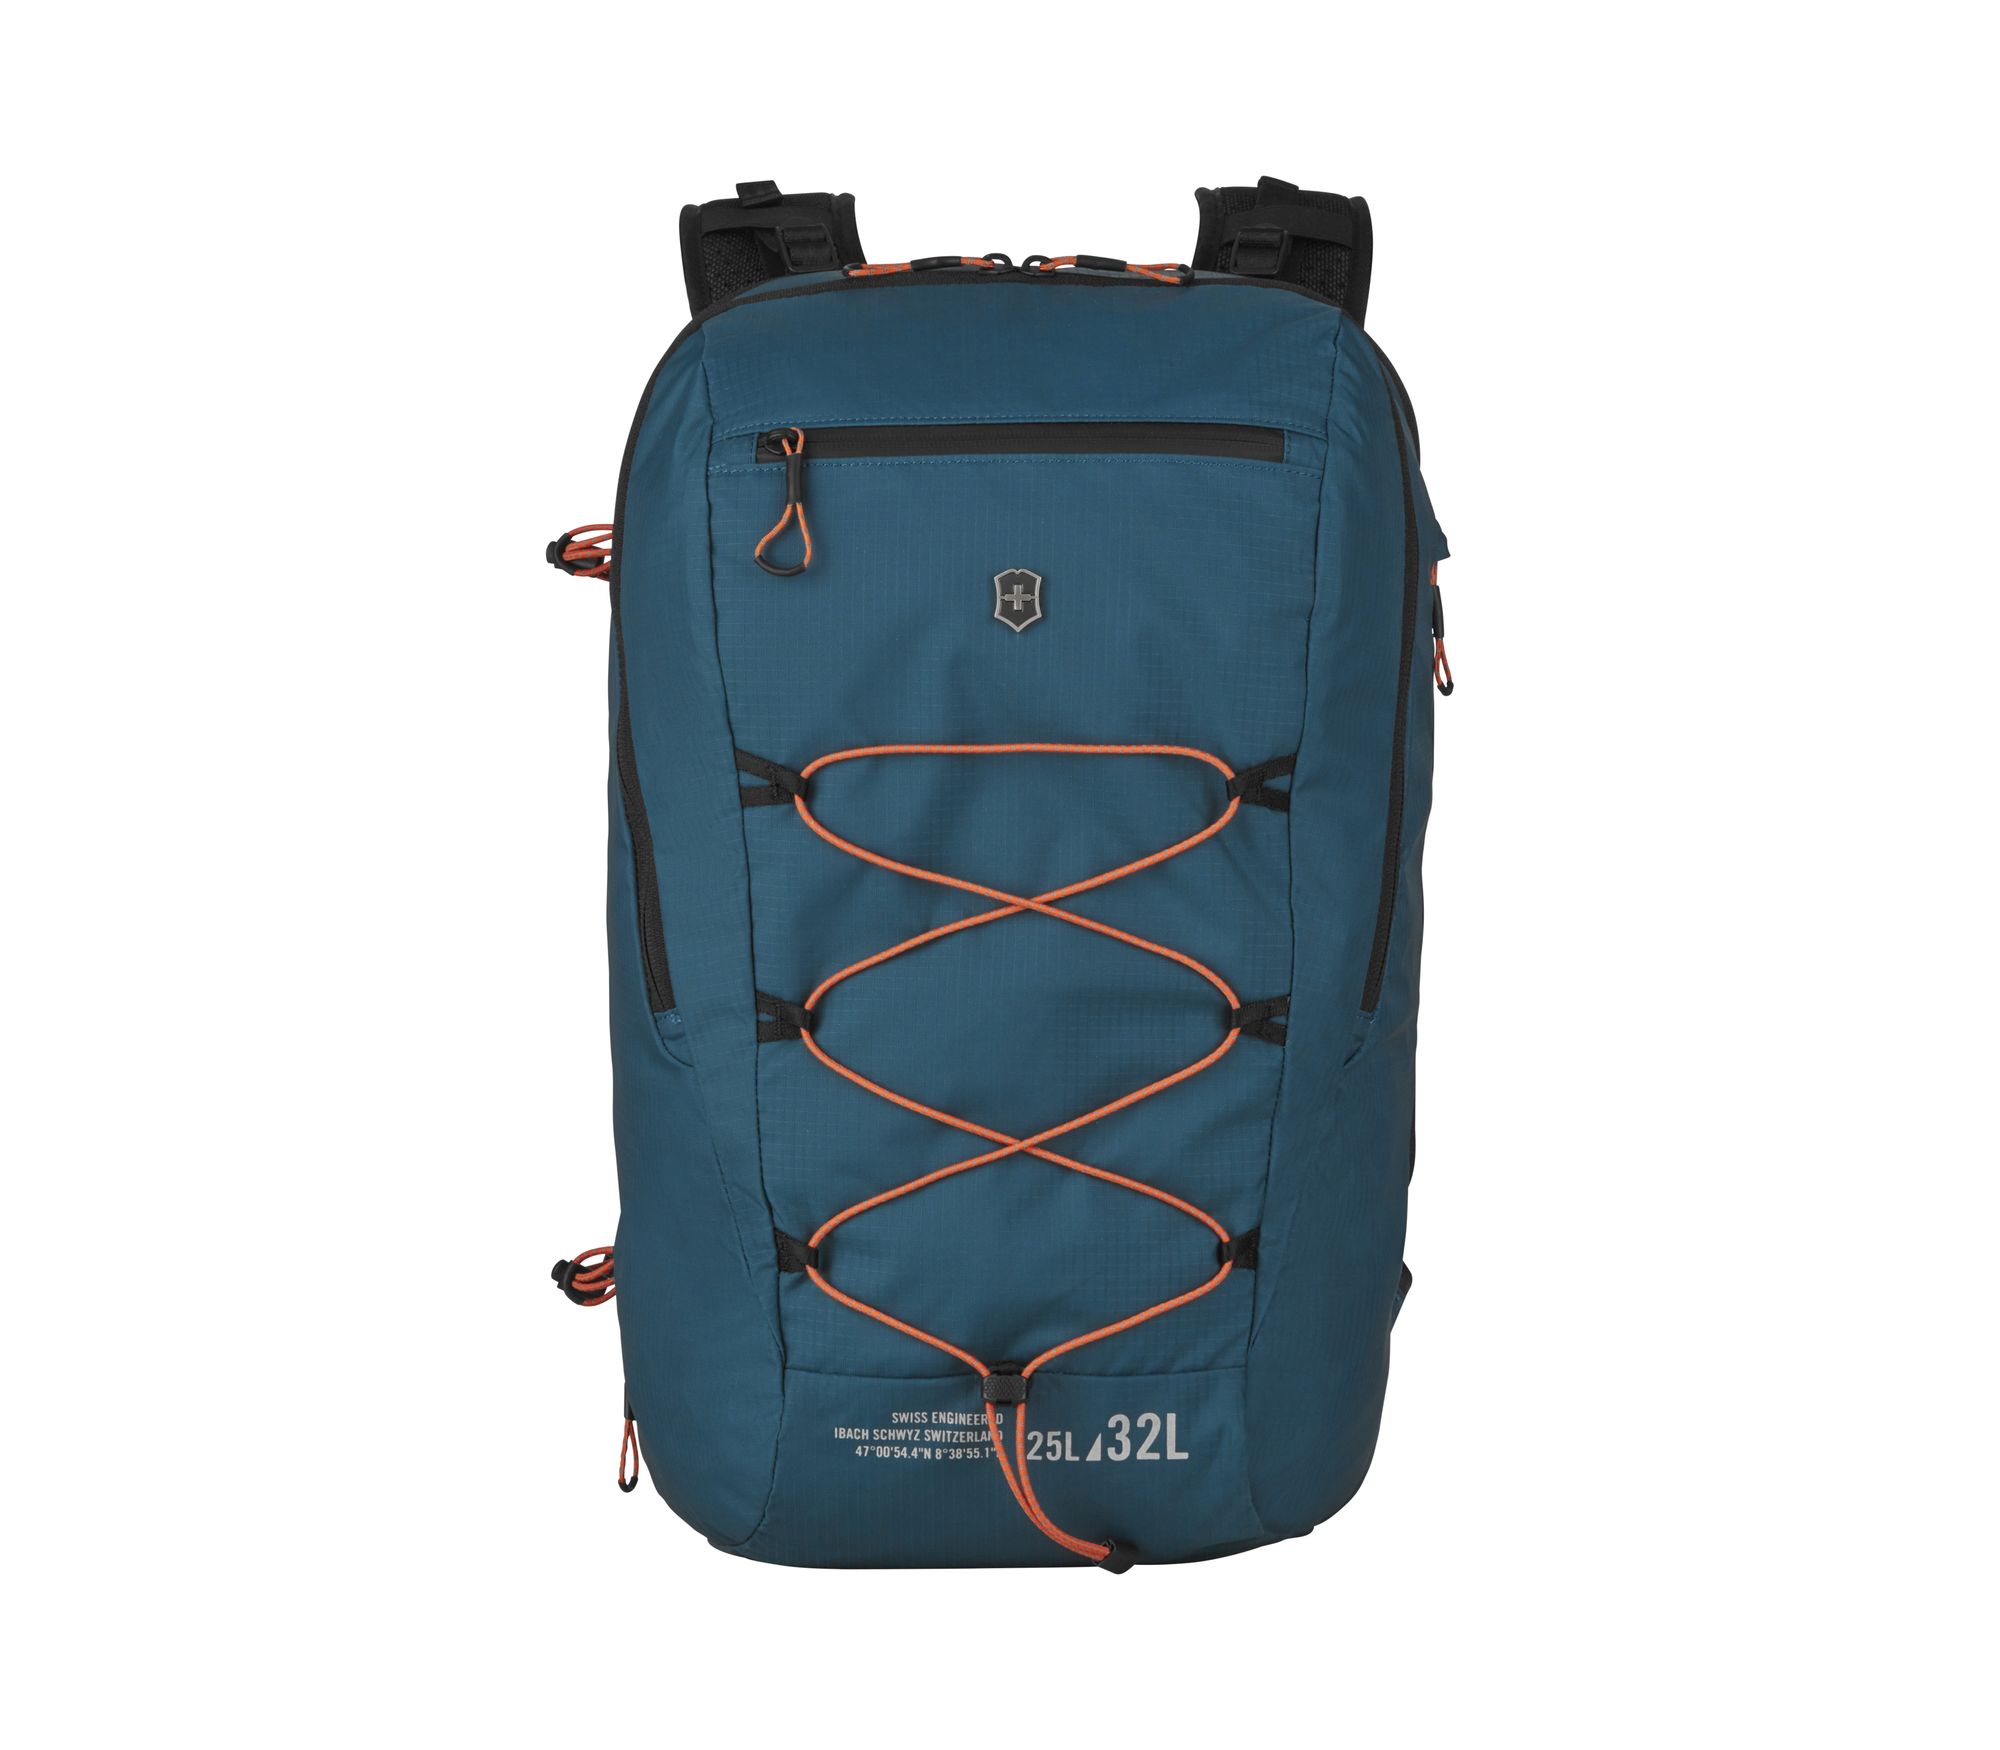 Рюкзак Victorinox. Altmont Active L.W. Expandable Backpack, бирюзовый, 33x21x49 см, 25 л